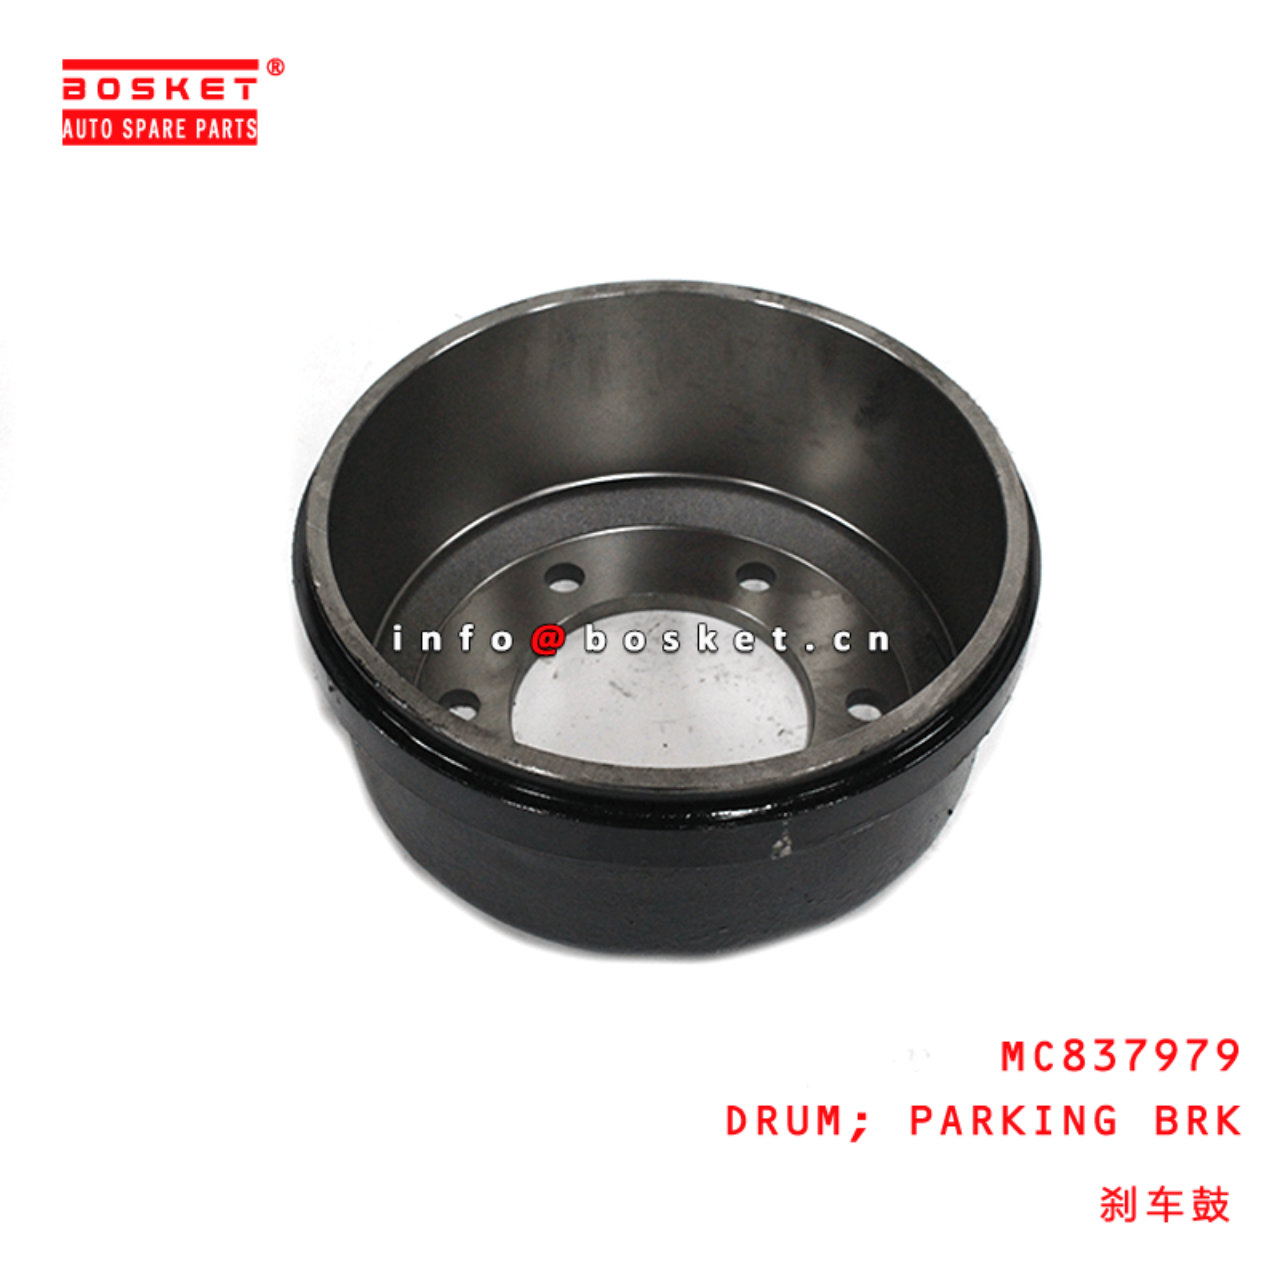  MC837979 Brake Parking Drum Suitable For MITSUBISHI FUSO